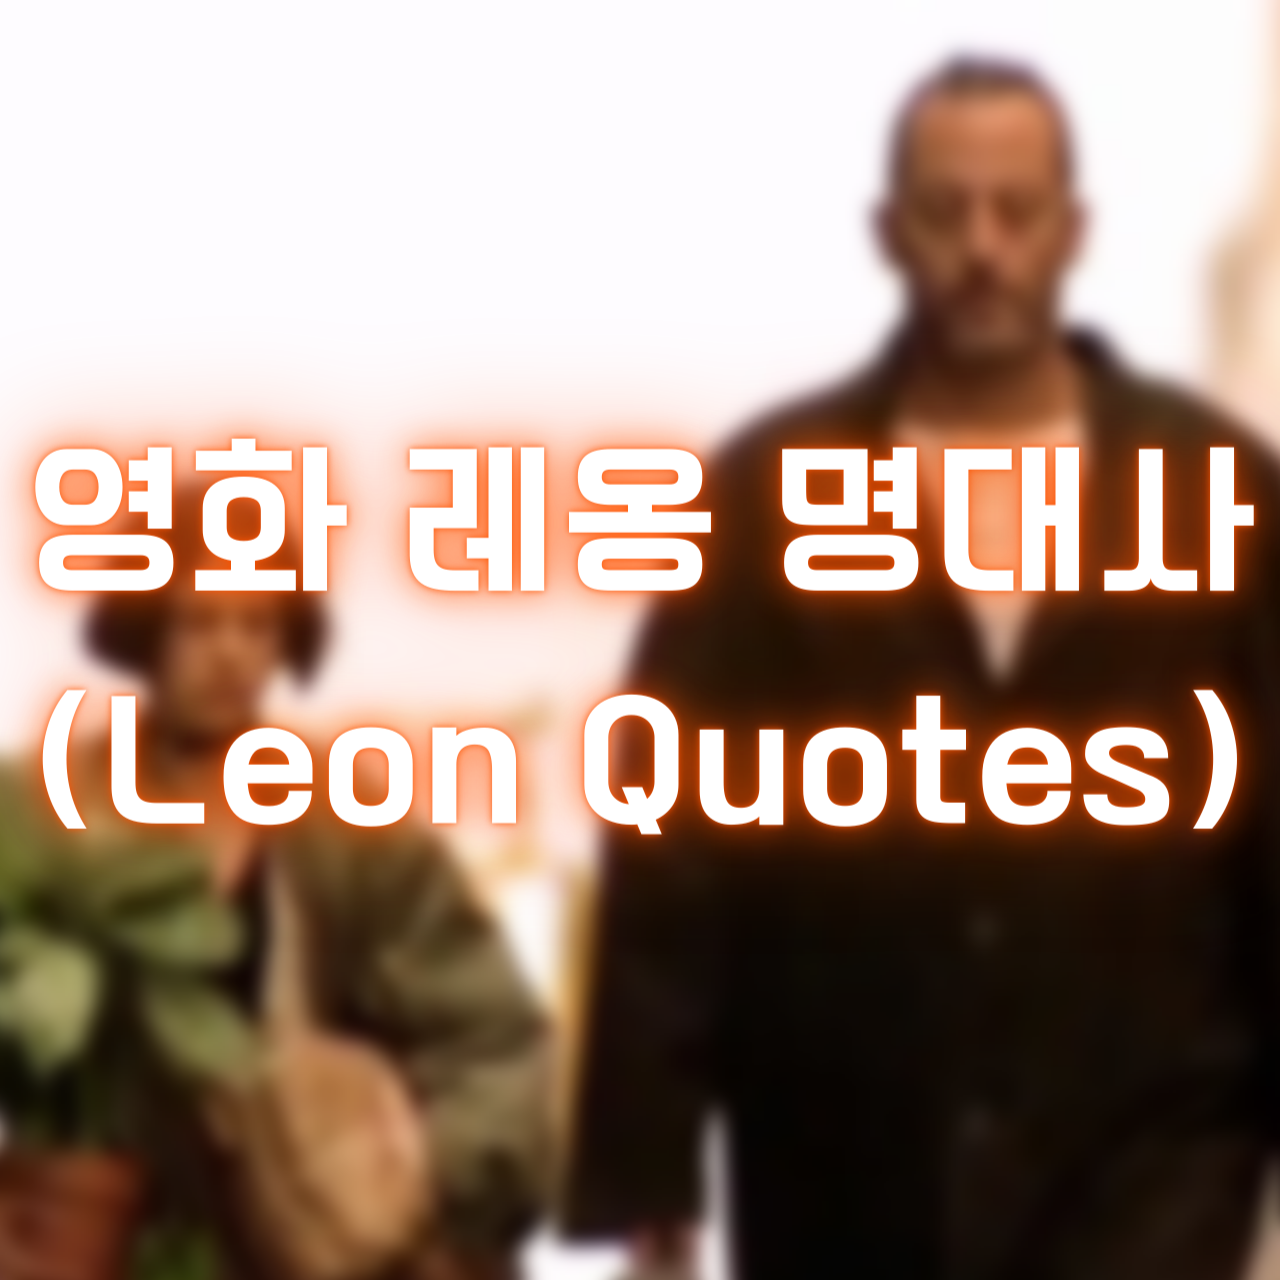 영화 레옹 명대사 (Leon Quotes)